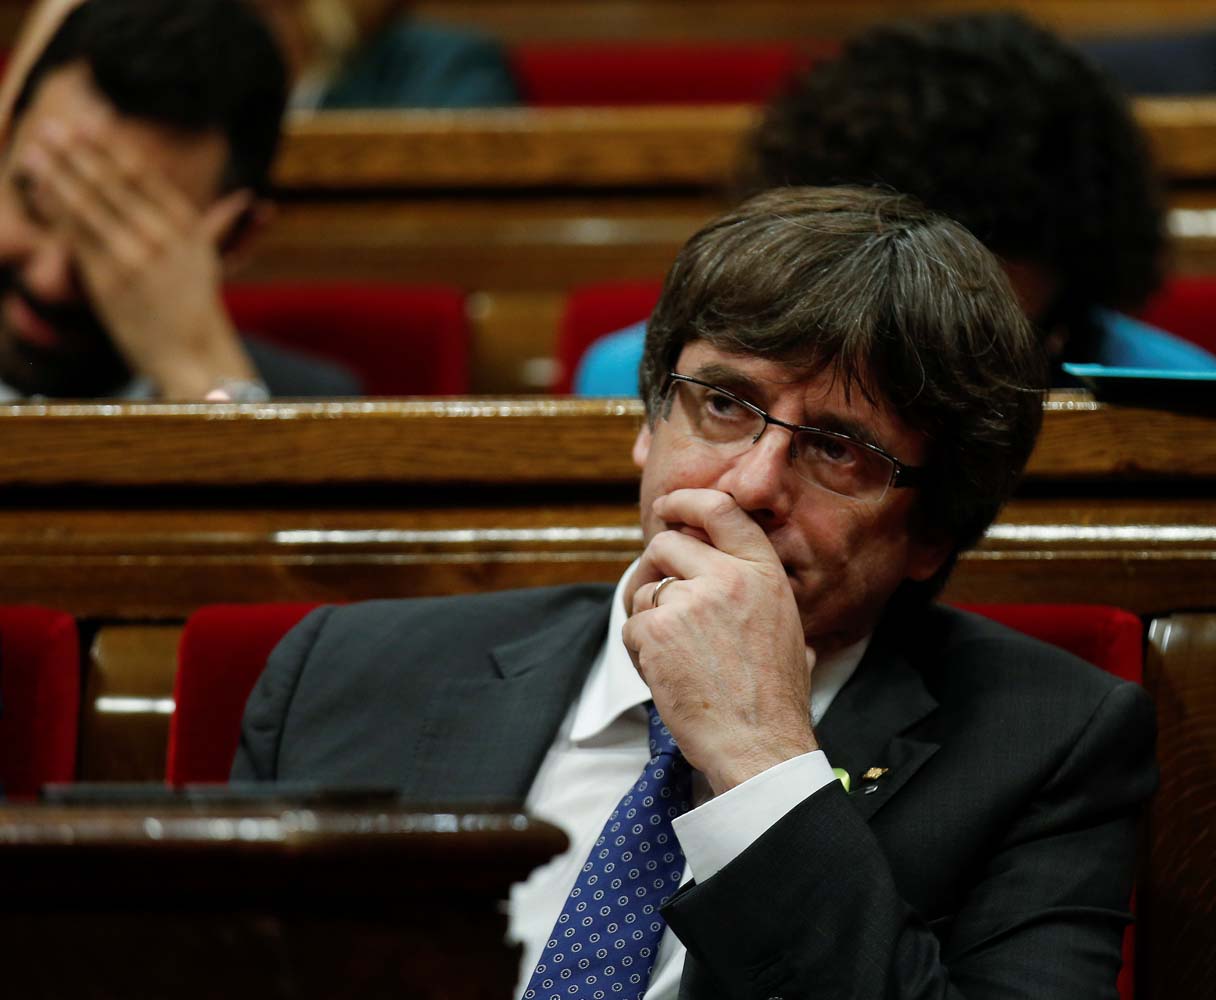 Bélgica podría ofrecer asilo a Carles Puigdemont, según un ministro